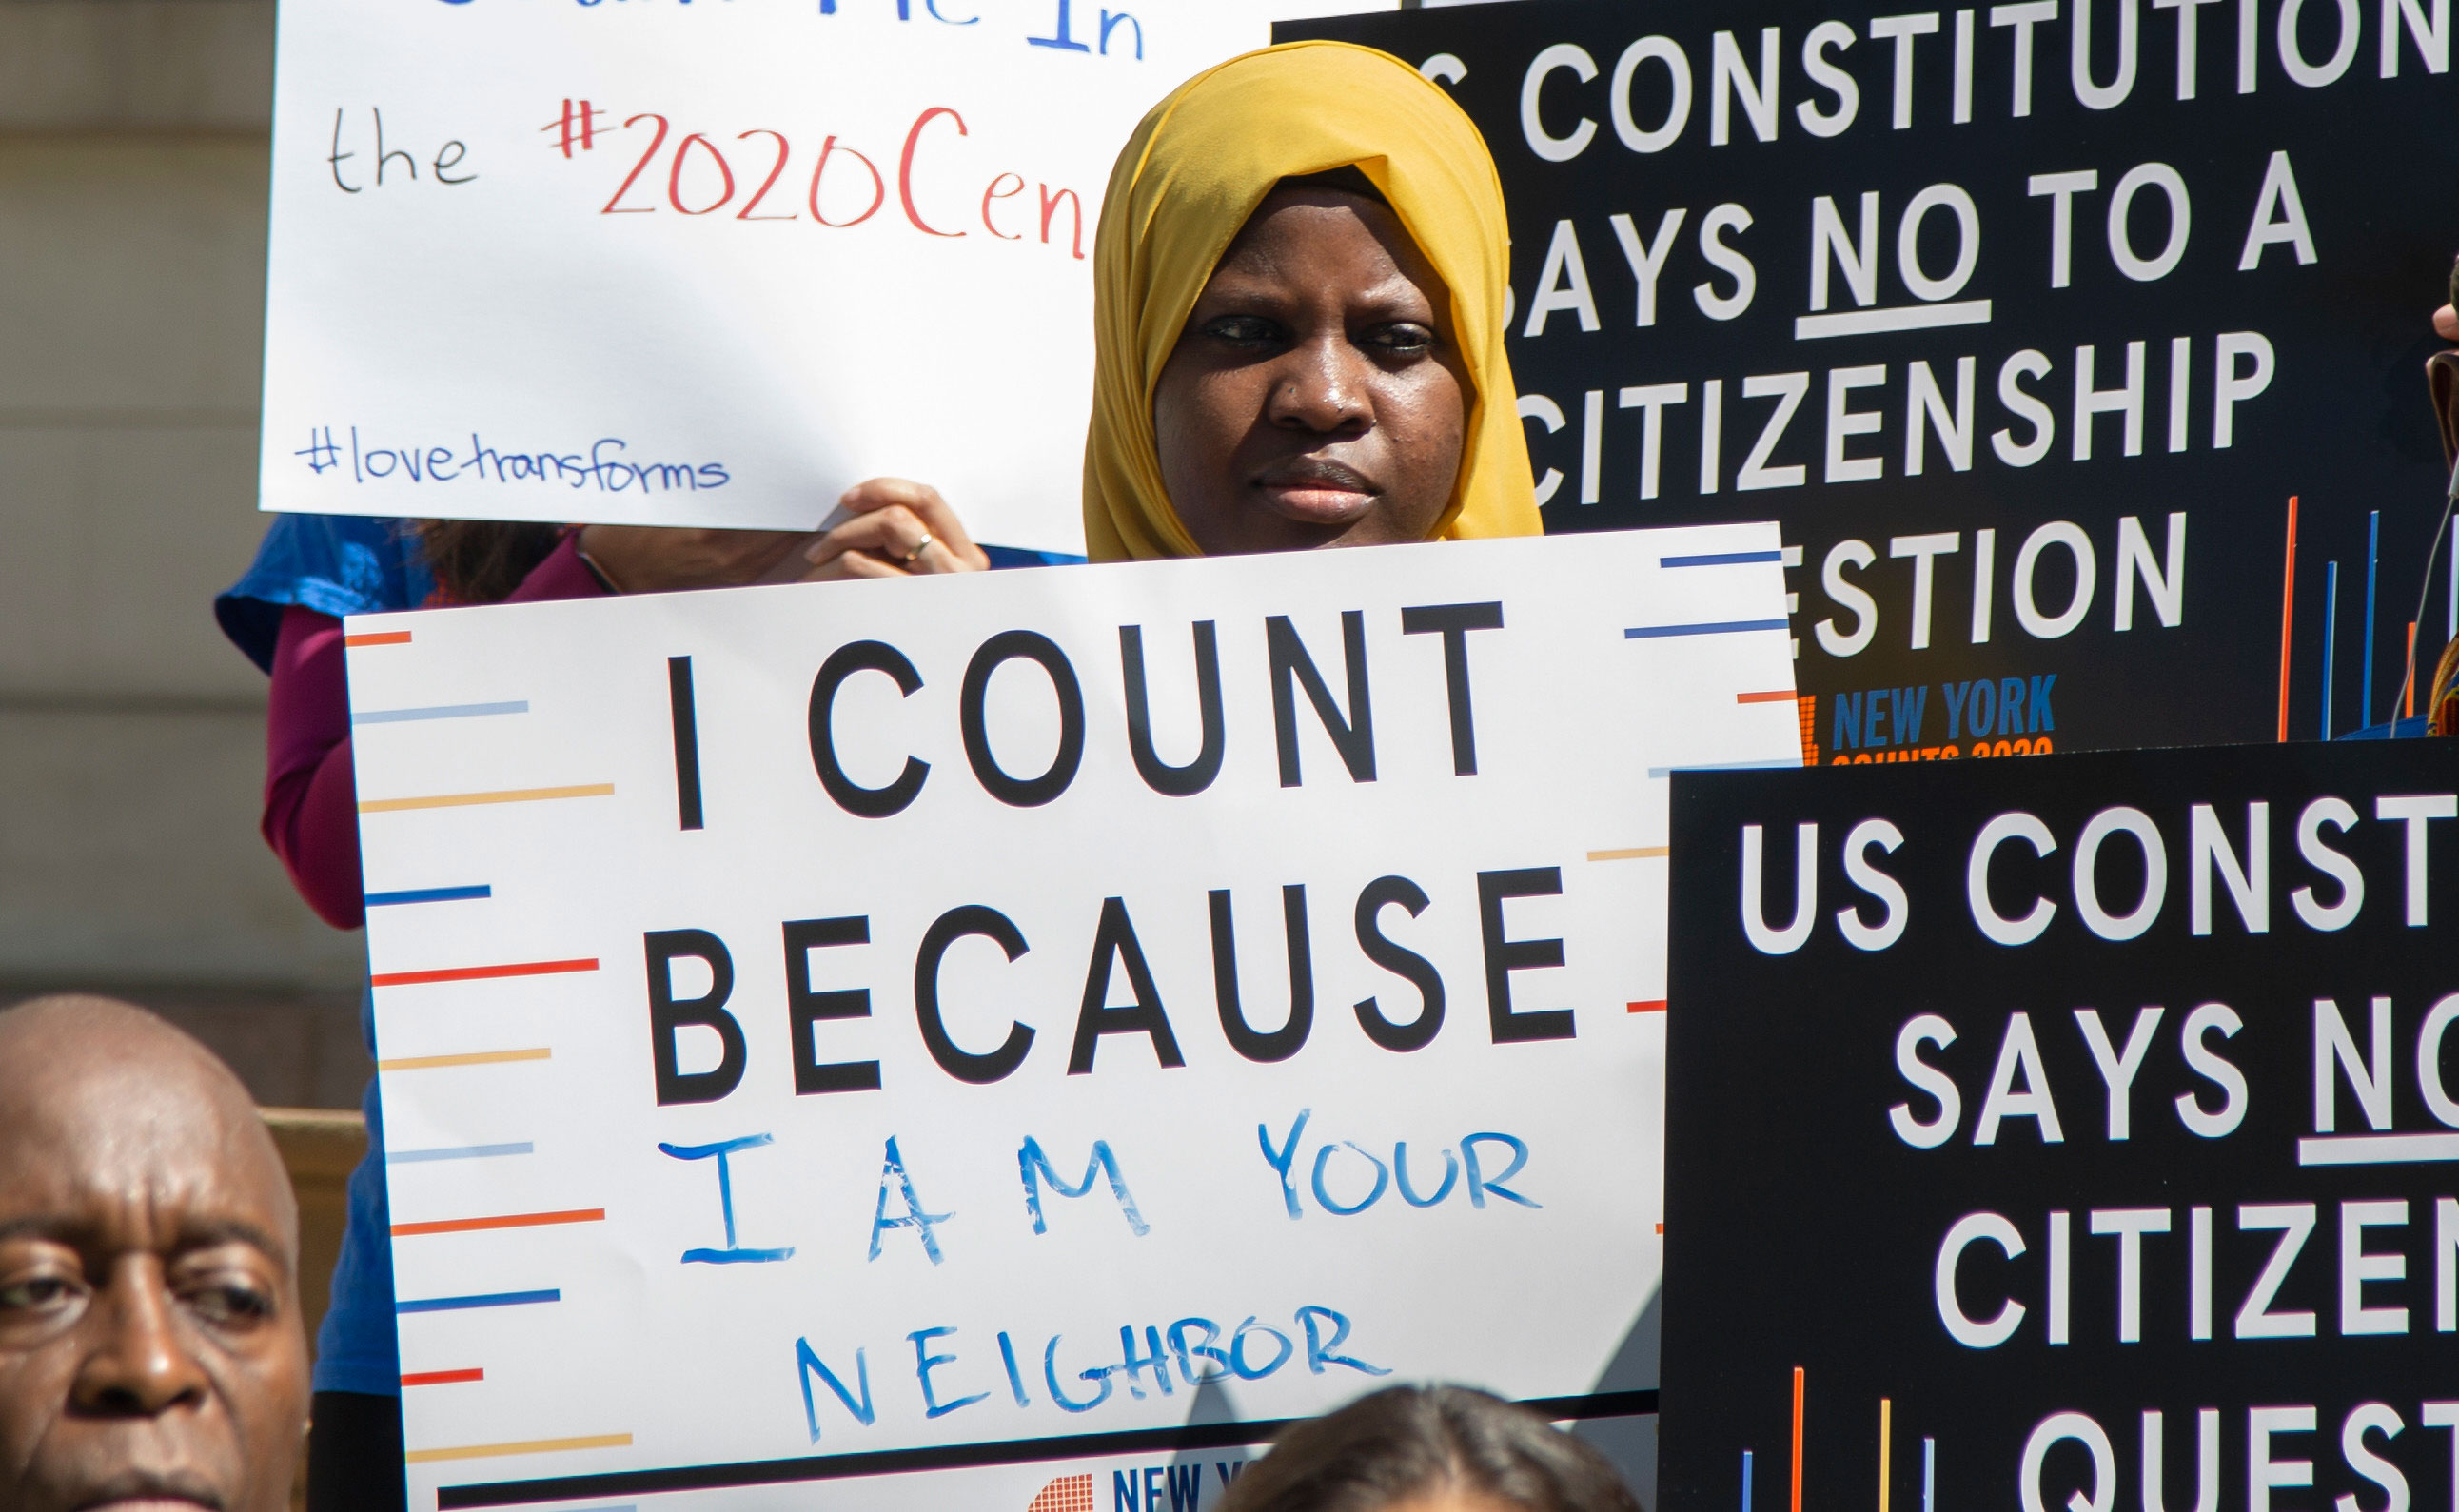 该图显示了一个年轻人在纽约市议会新闻发布会上举着标语“我之所以计数是因为我是你的邻居”。